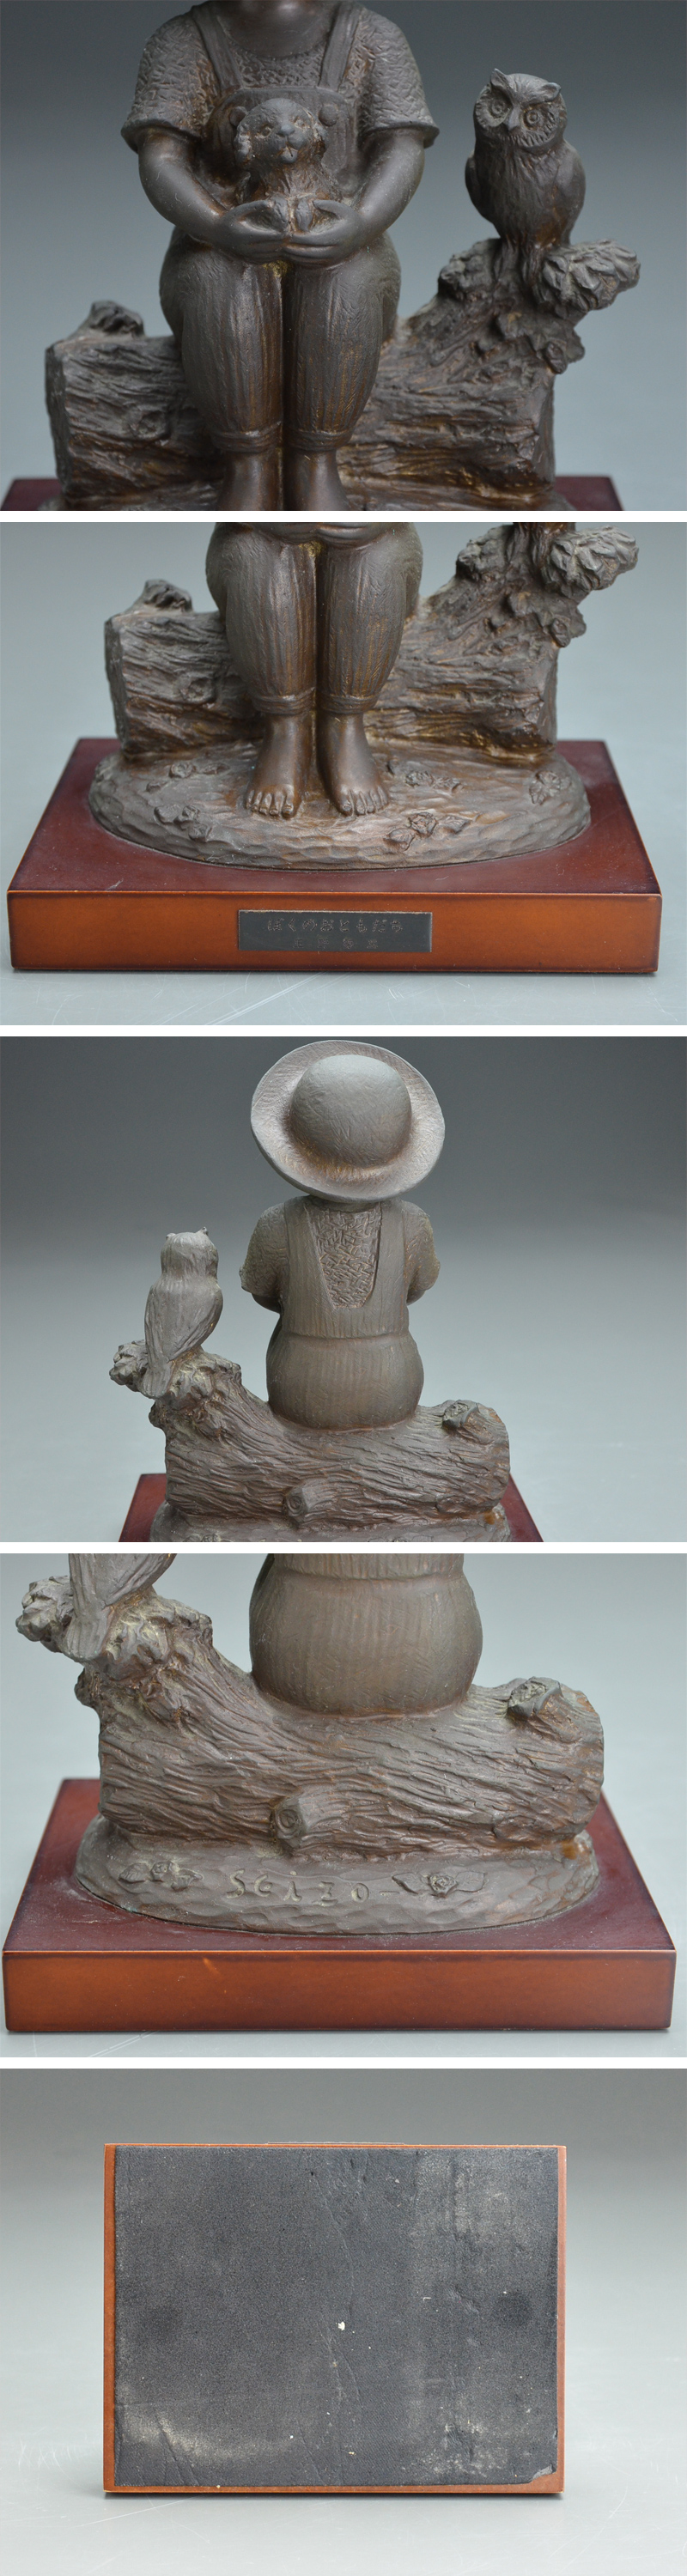 スマホ彫刻家 玉野 勢三 作 子供のブロンズ像『ぼくのおともだち』高さ24.5㎝ 06i841 西洋彫刻